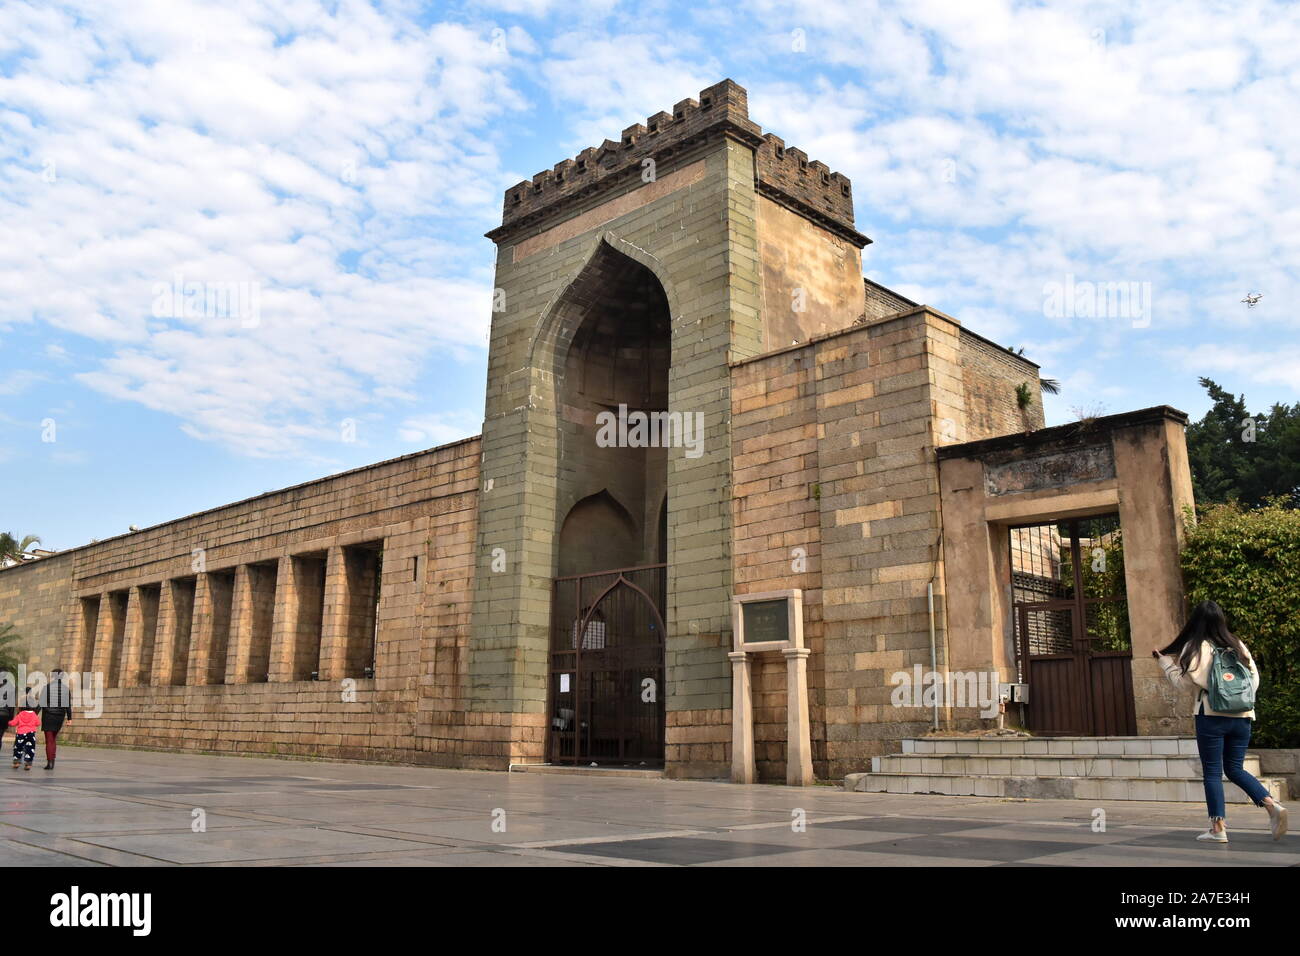 Islam in China - Ancient Qingjing Ashab mosque of early Muslim community in Quanzhou, Fujian, China Stock Photo